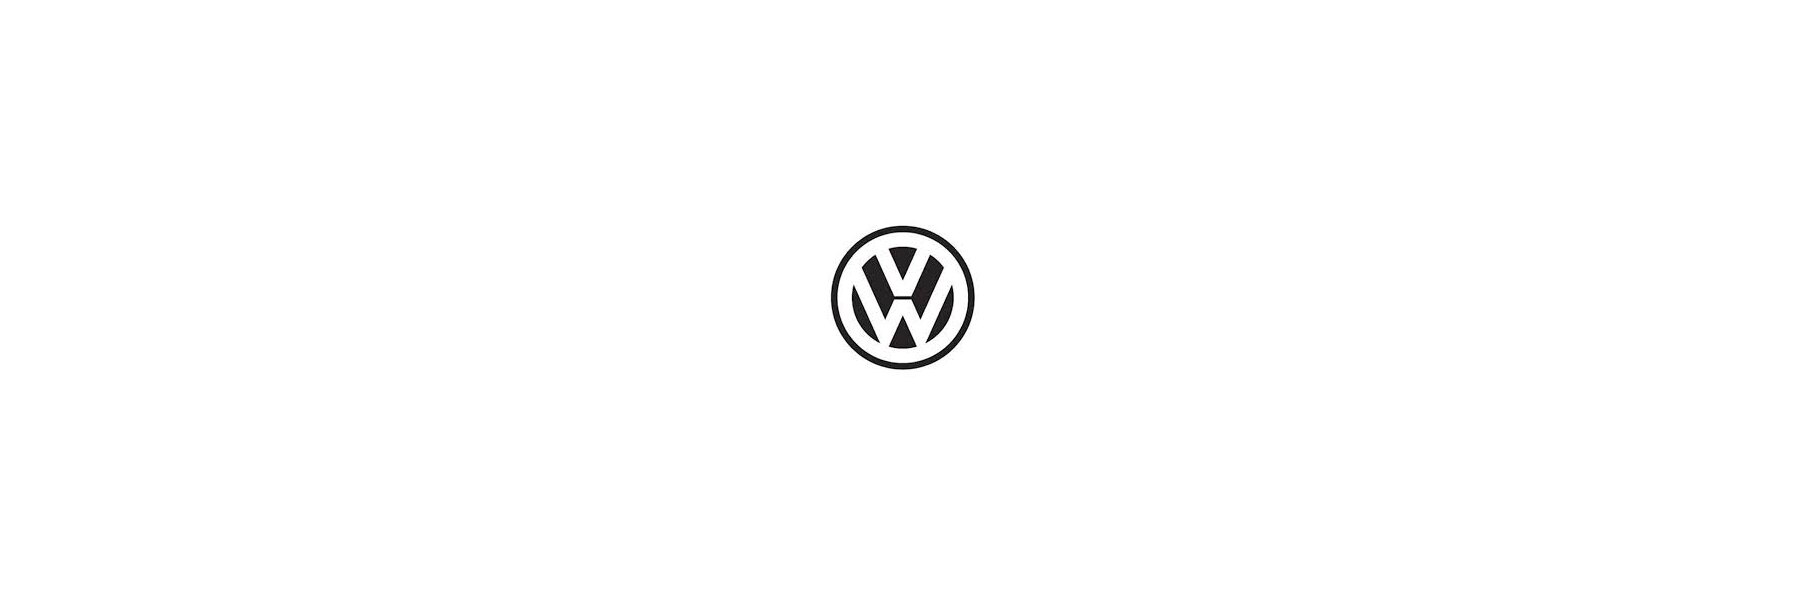 Sitzbezug für Volkswagen T6.1 Transporter & Caravelle, Bj. ab 2019, aus  Kunstleder, Einzelsitz (Beifahrersitz), mit Seitenairbag bei Mercateo  günstig kaufen